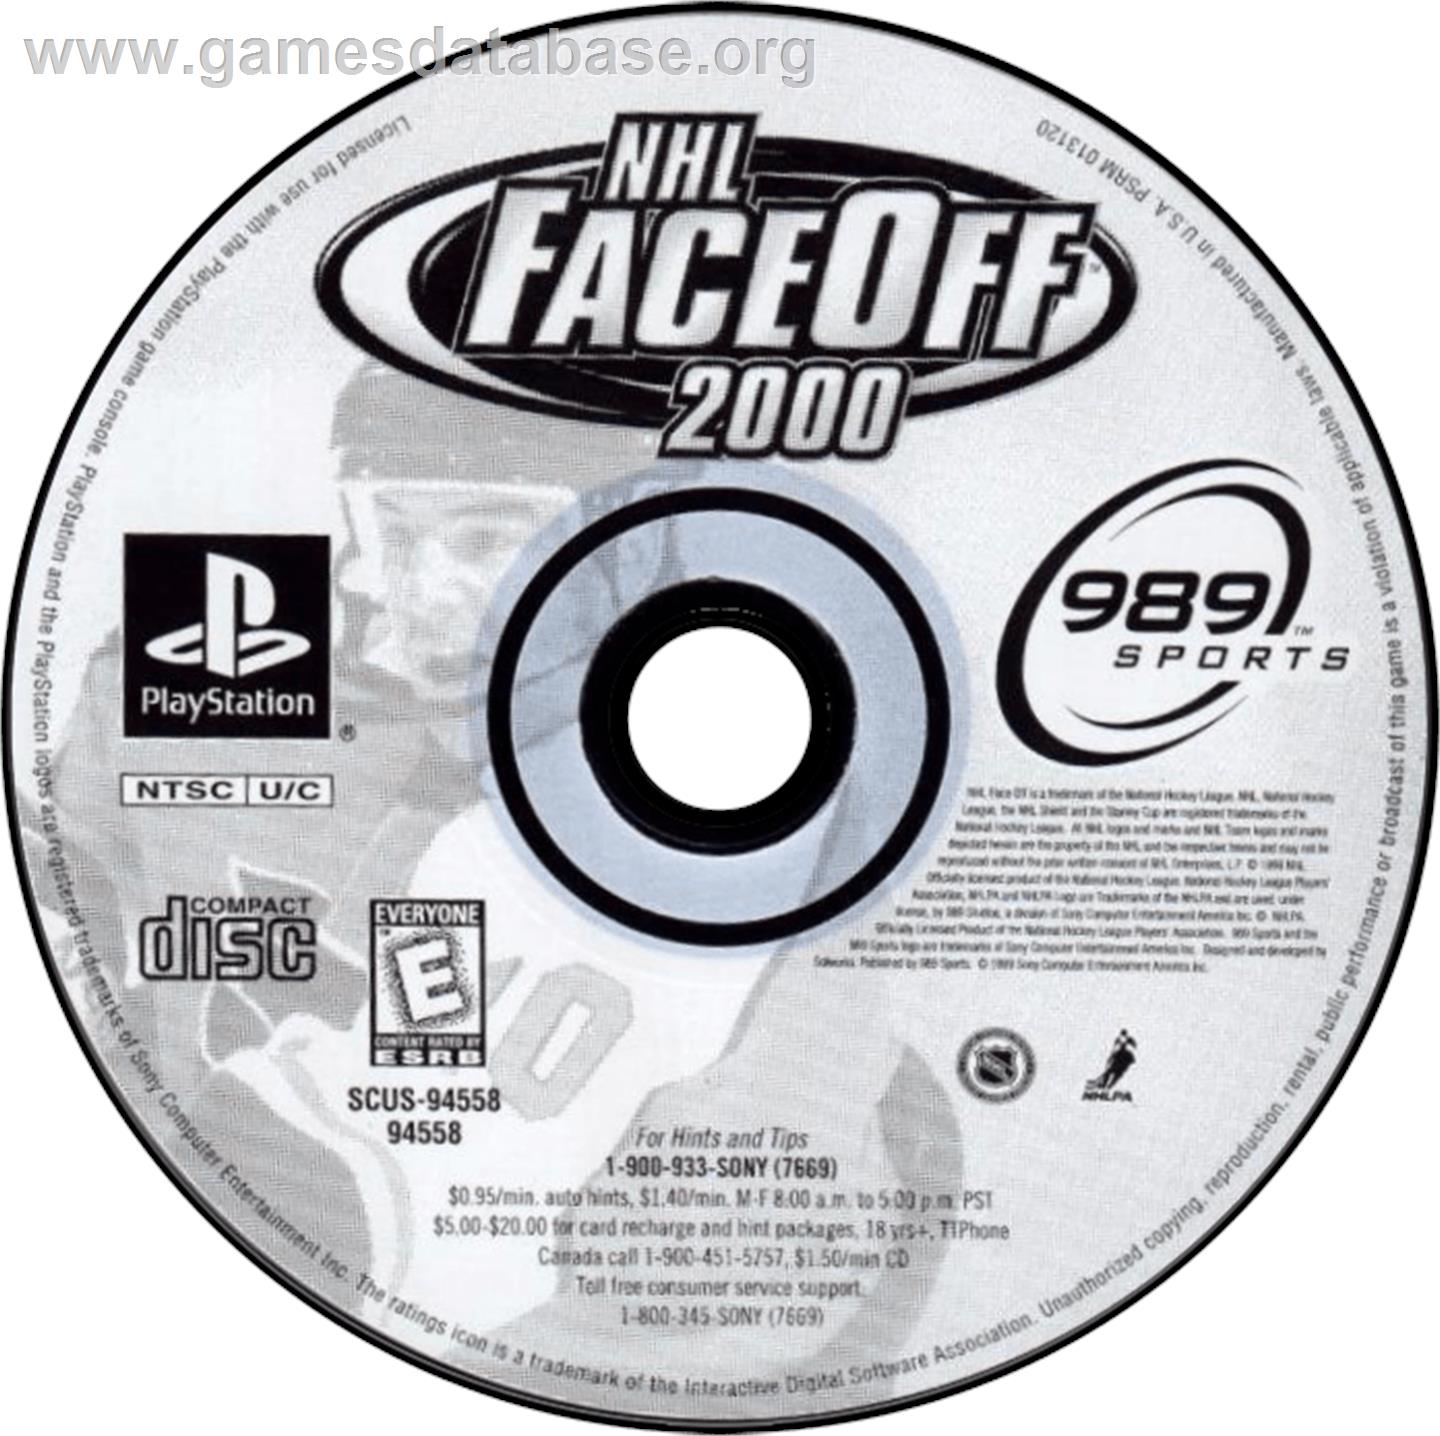 NHL FaceOff 2000 - Sony Playstation - Artwork - Disc